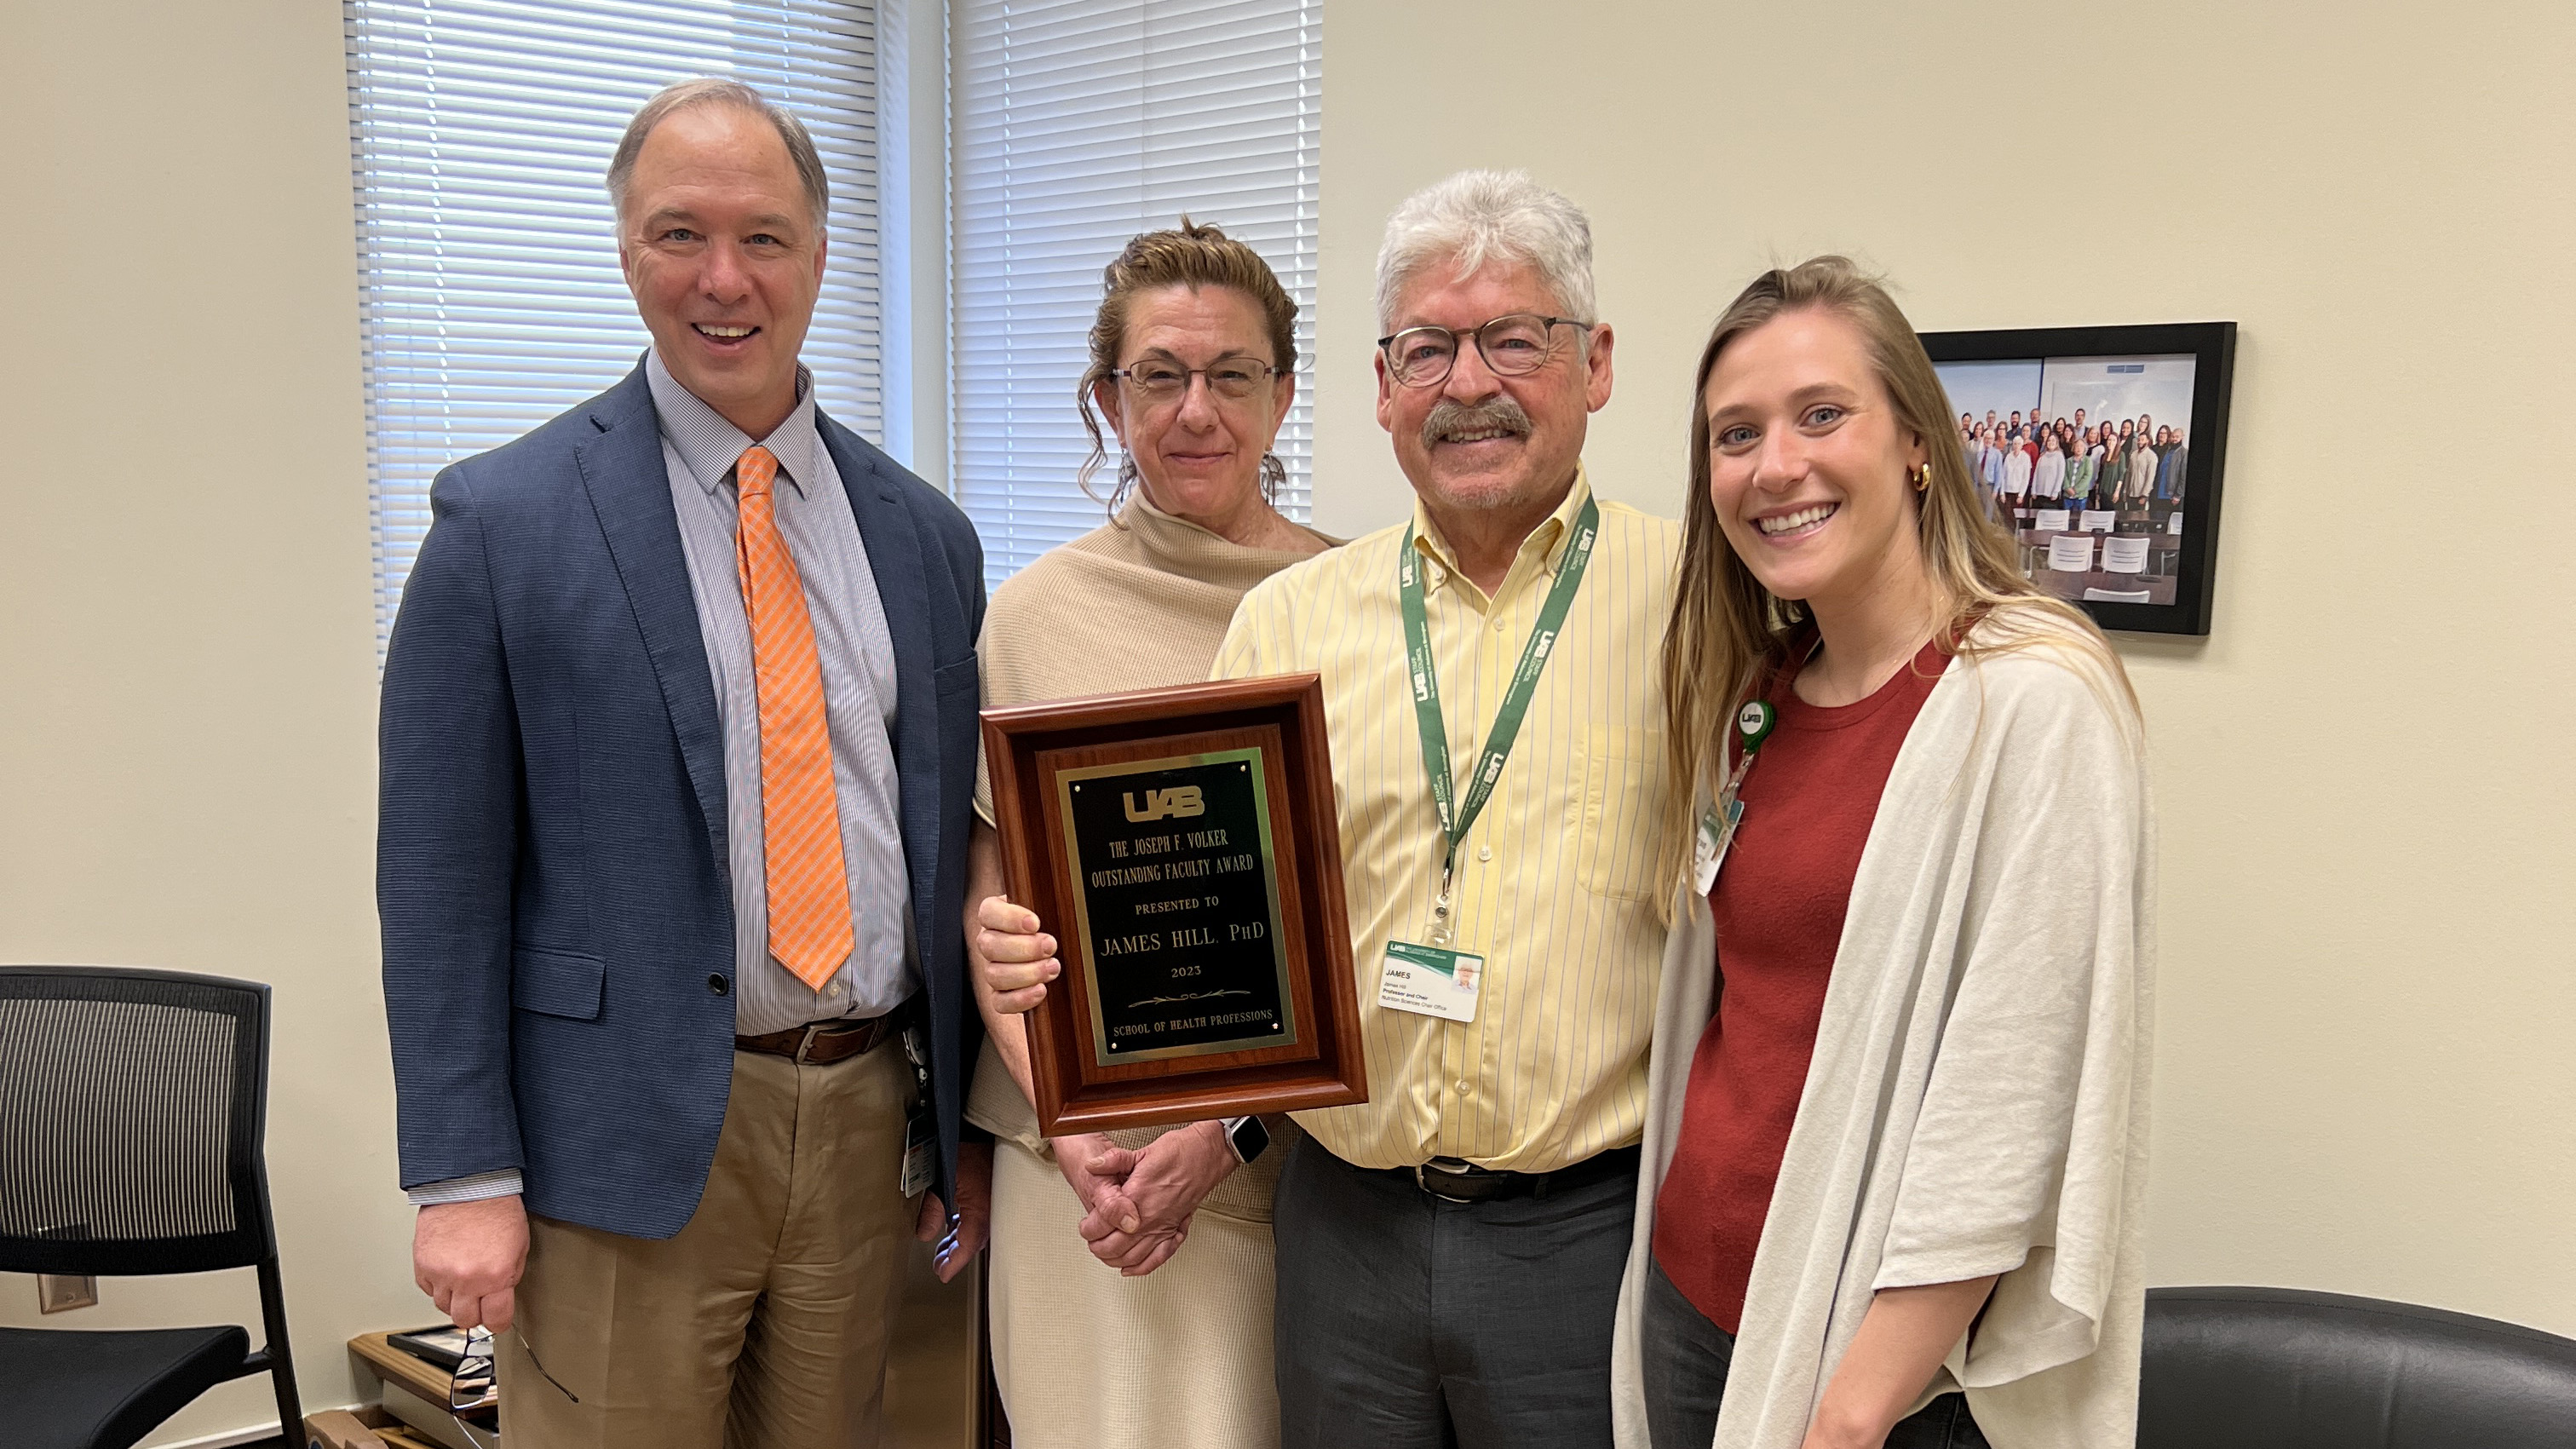 Joseph F. Volker Award: James Hill, Nutrition Sciences